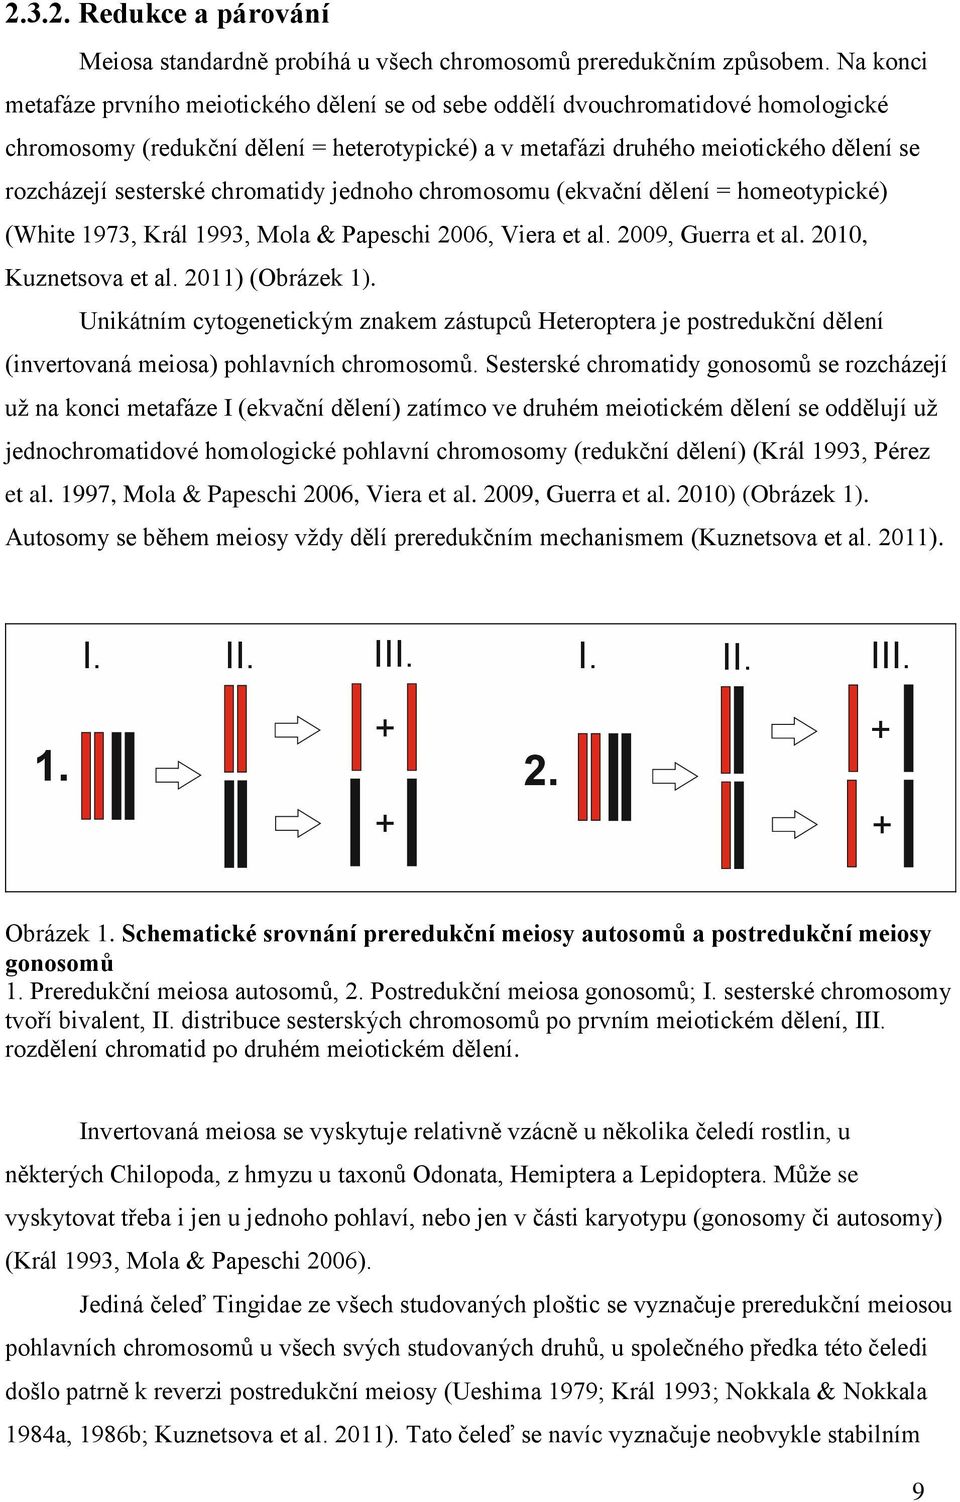 sesterské chromatidy jednoho chromosomu (ekvační dělení = homeotypické) (White 1973, Král 1993, Mola & Papeschi 2006, Viera et al. 2009, Guerra et al. 2010, Kuznetsova et al. 2011) (Obrázek 1).